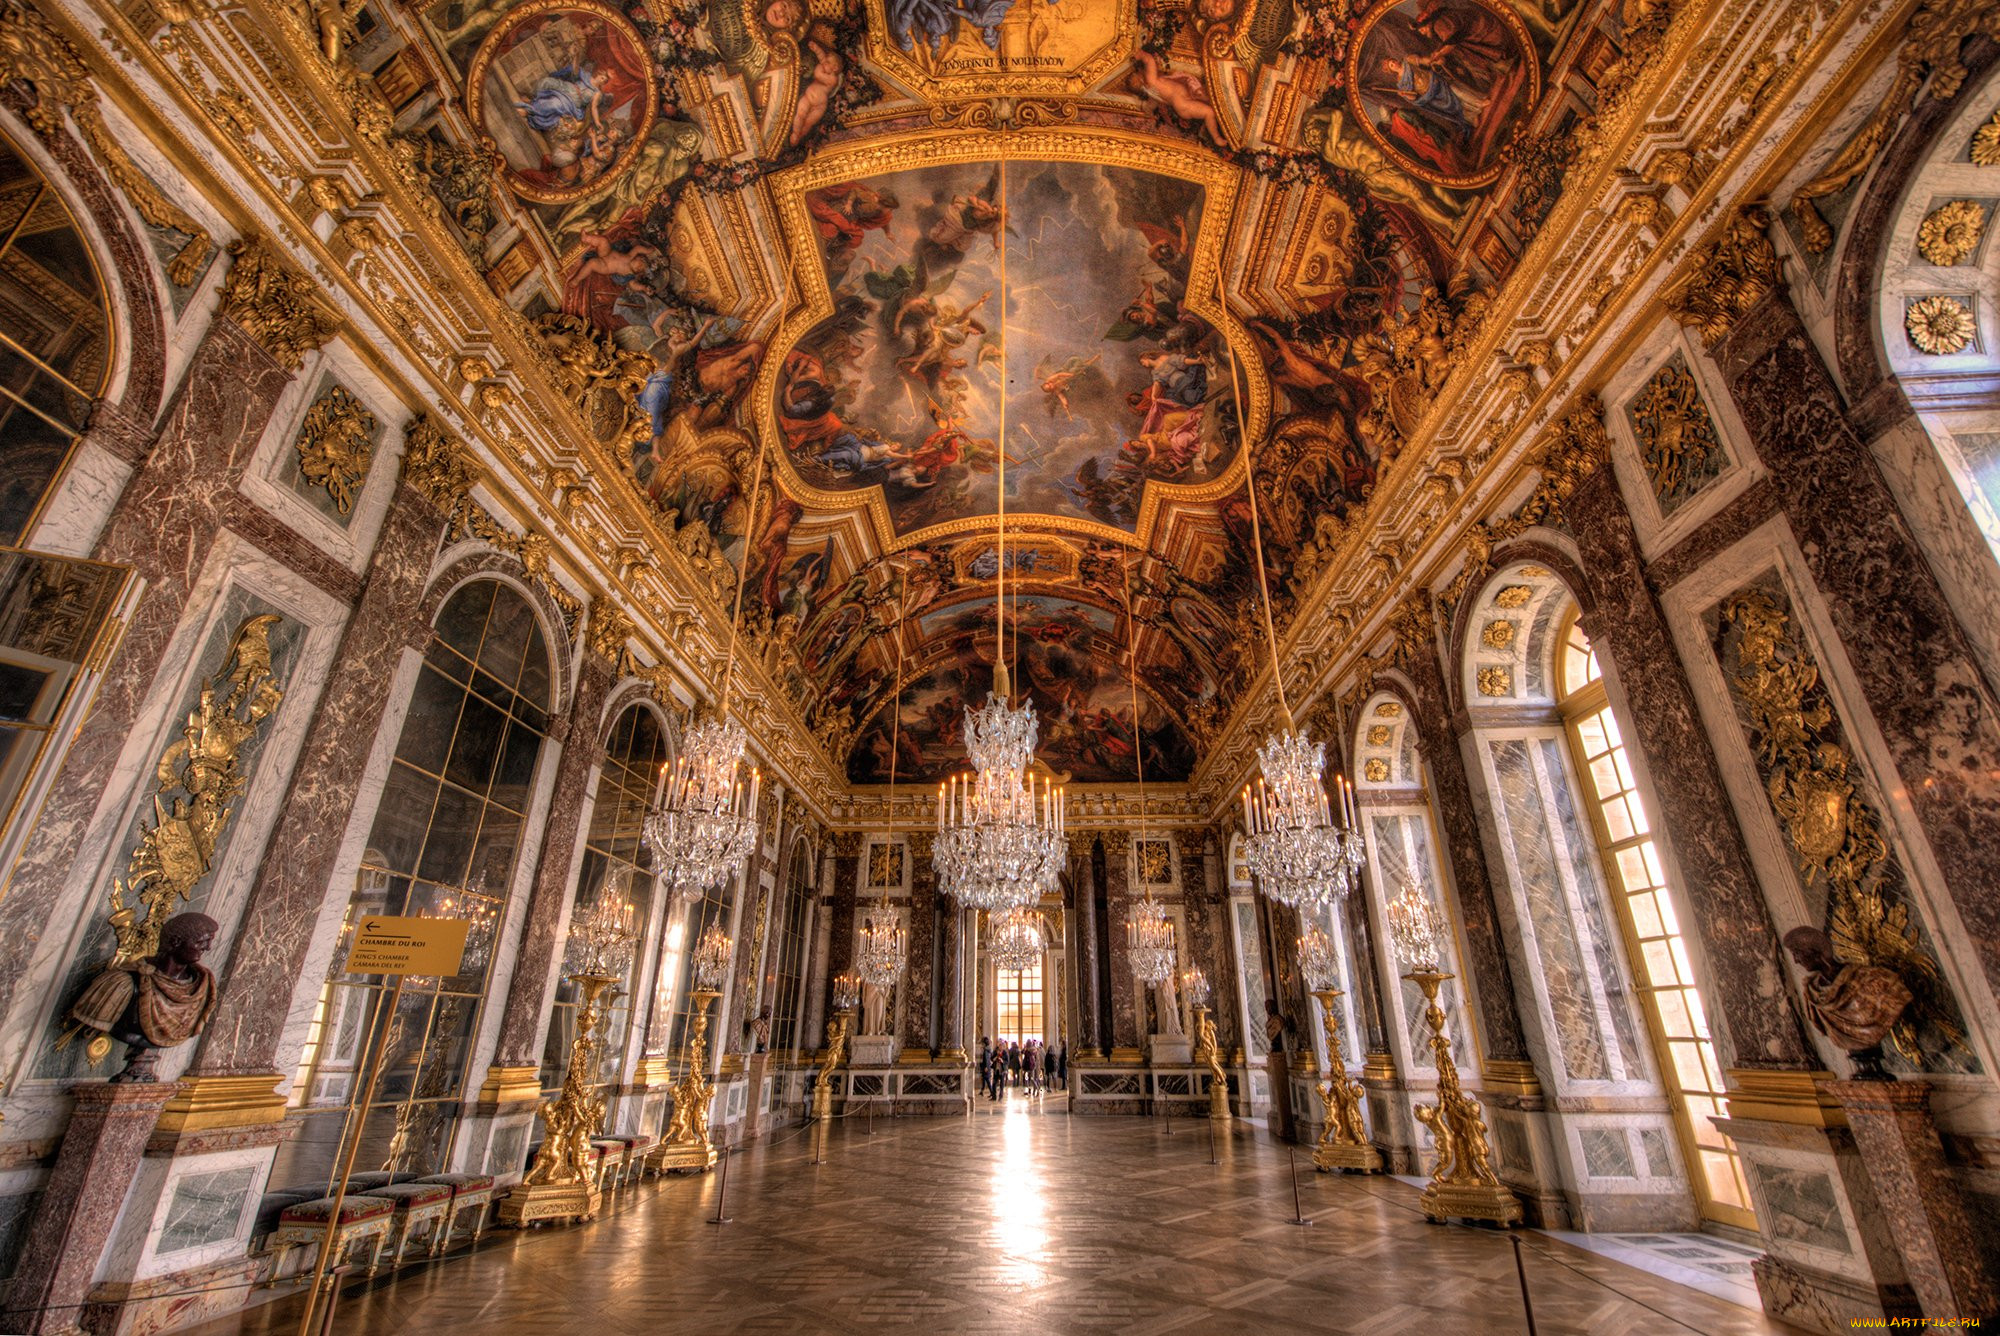 Де версаль. Франция Барокко Версальский дворец. Версальский дворец, Версаль дворец Версаля. Зеркальная галерея Версальского дворца. Барокко интерьеры Версальского дворца.